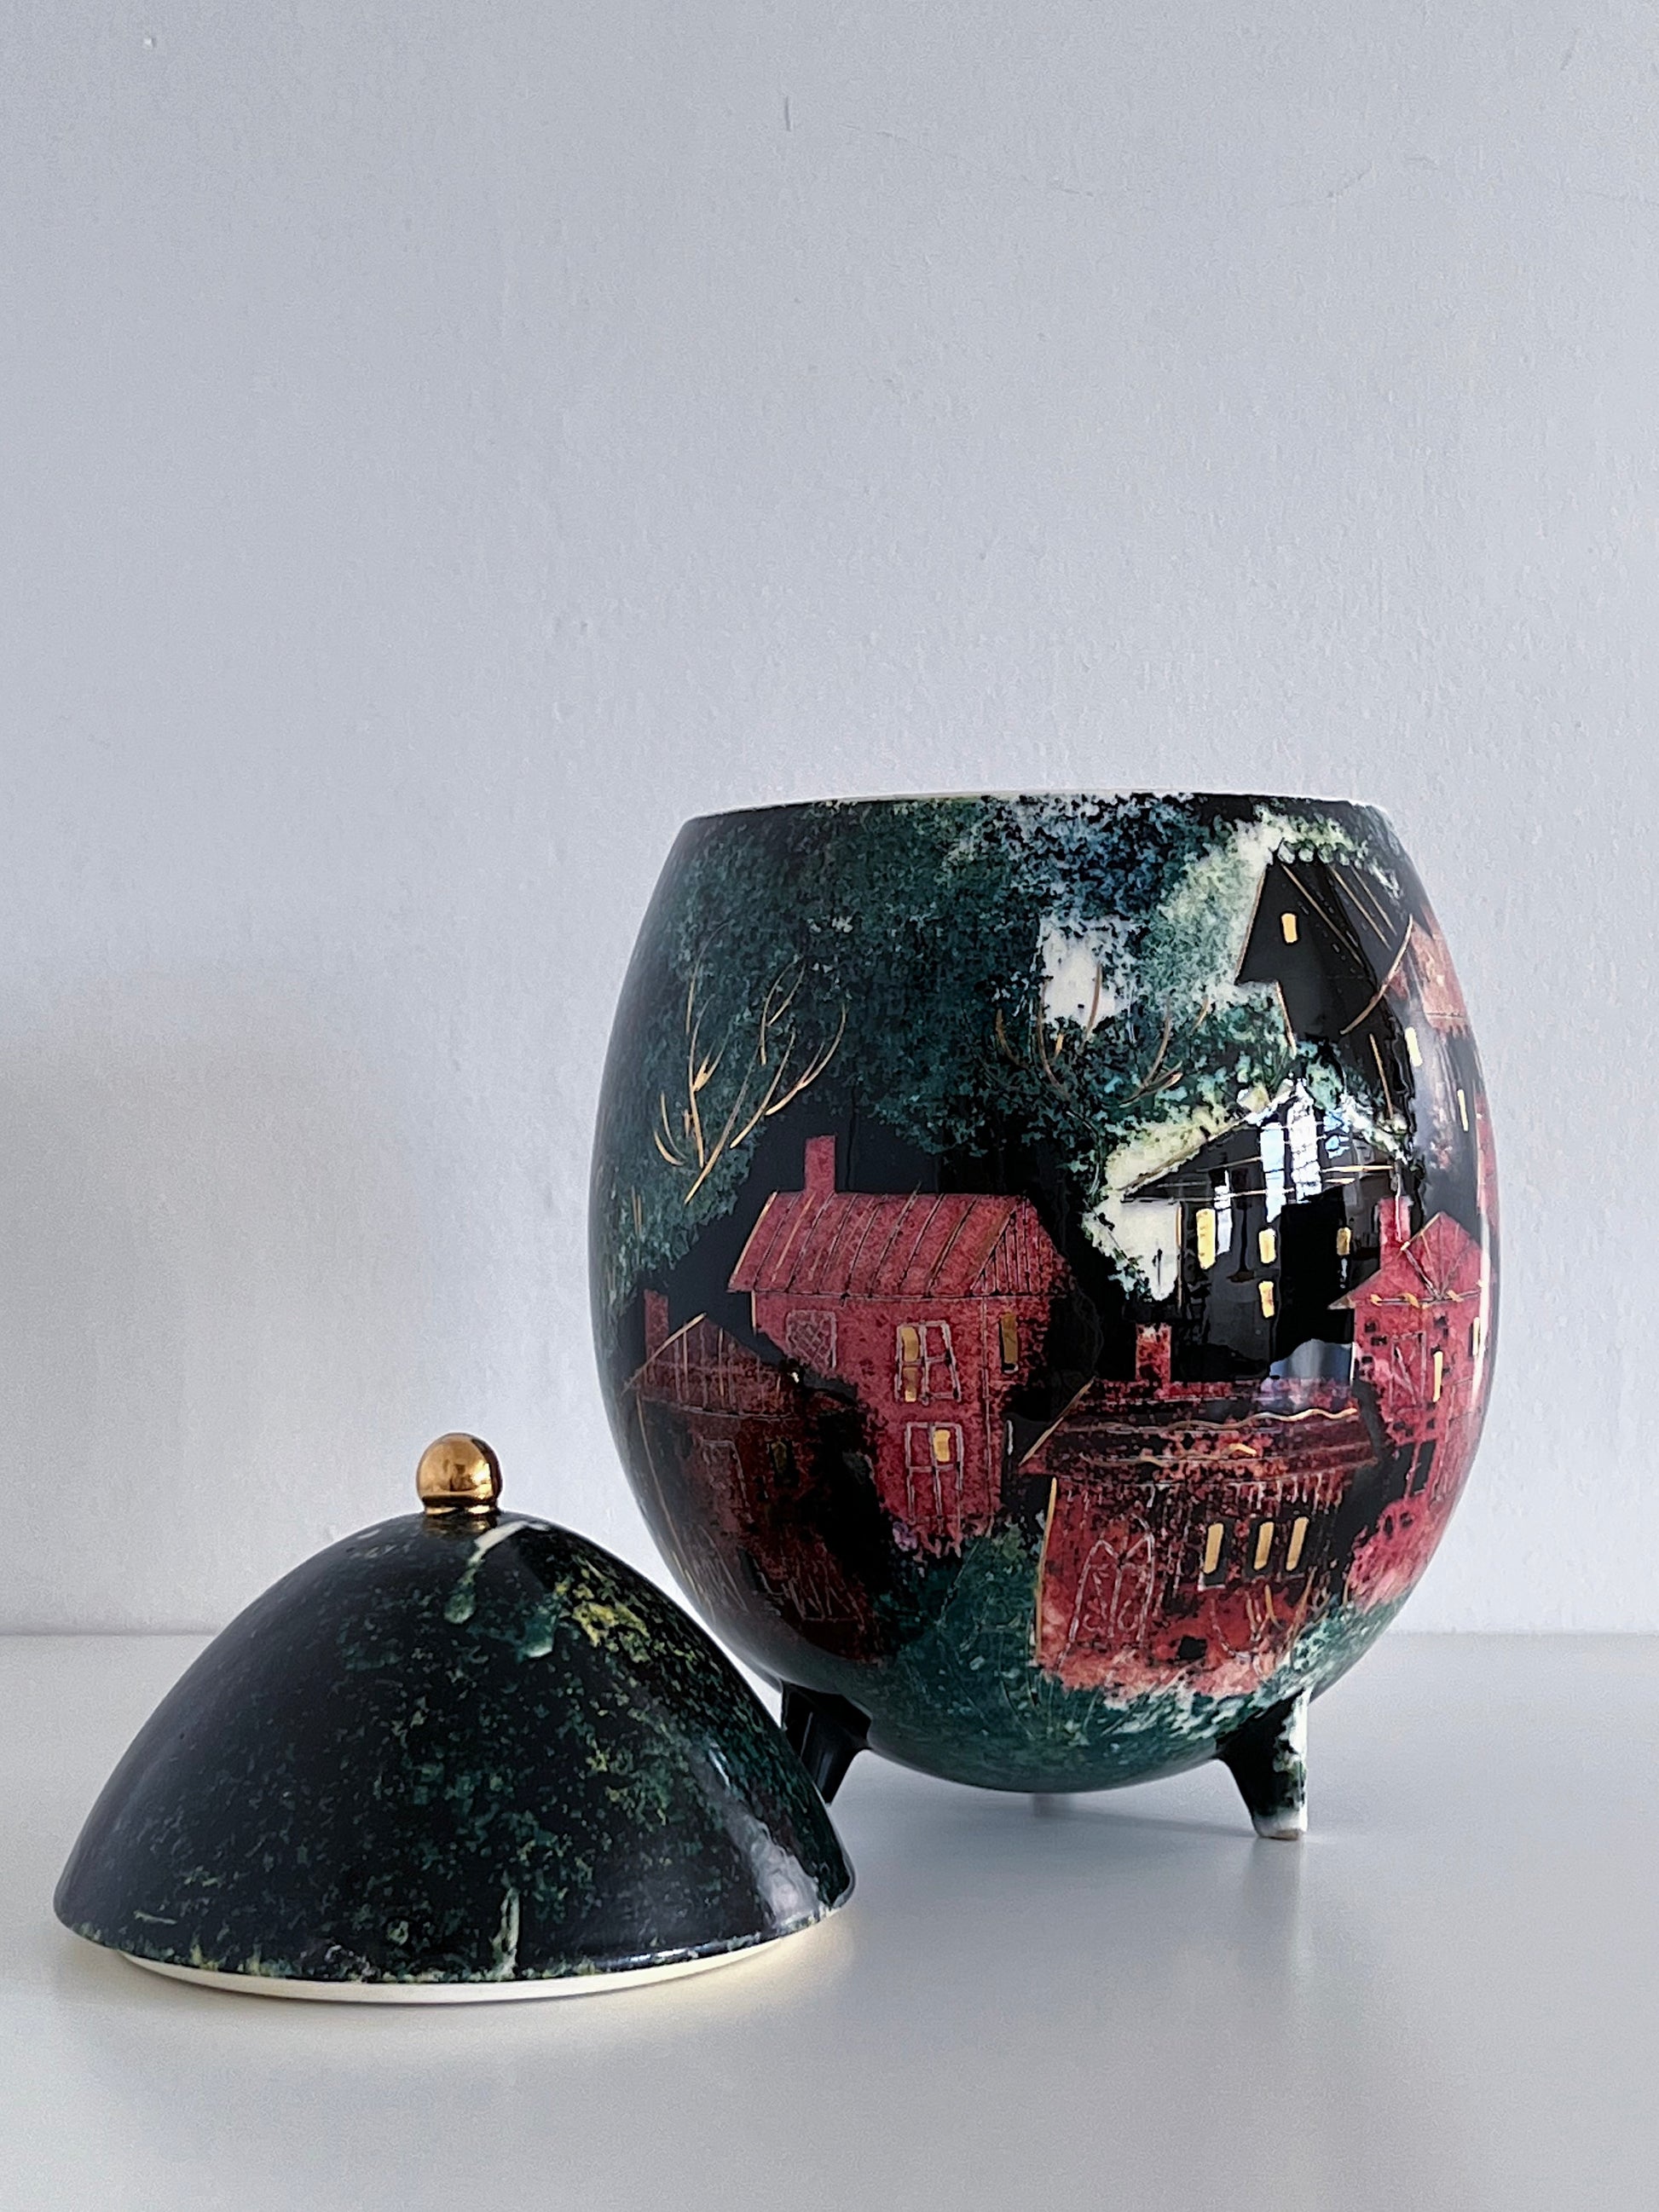 Sascha Brastoff Porcelain Sculpture Vases & Decorative Objects